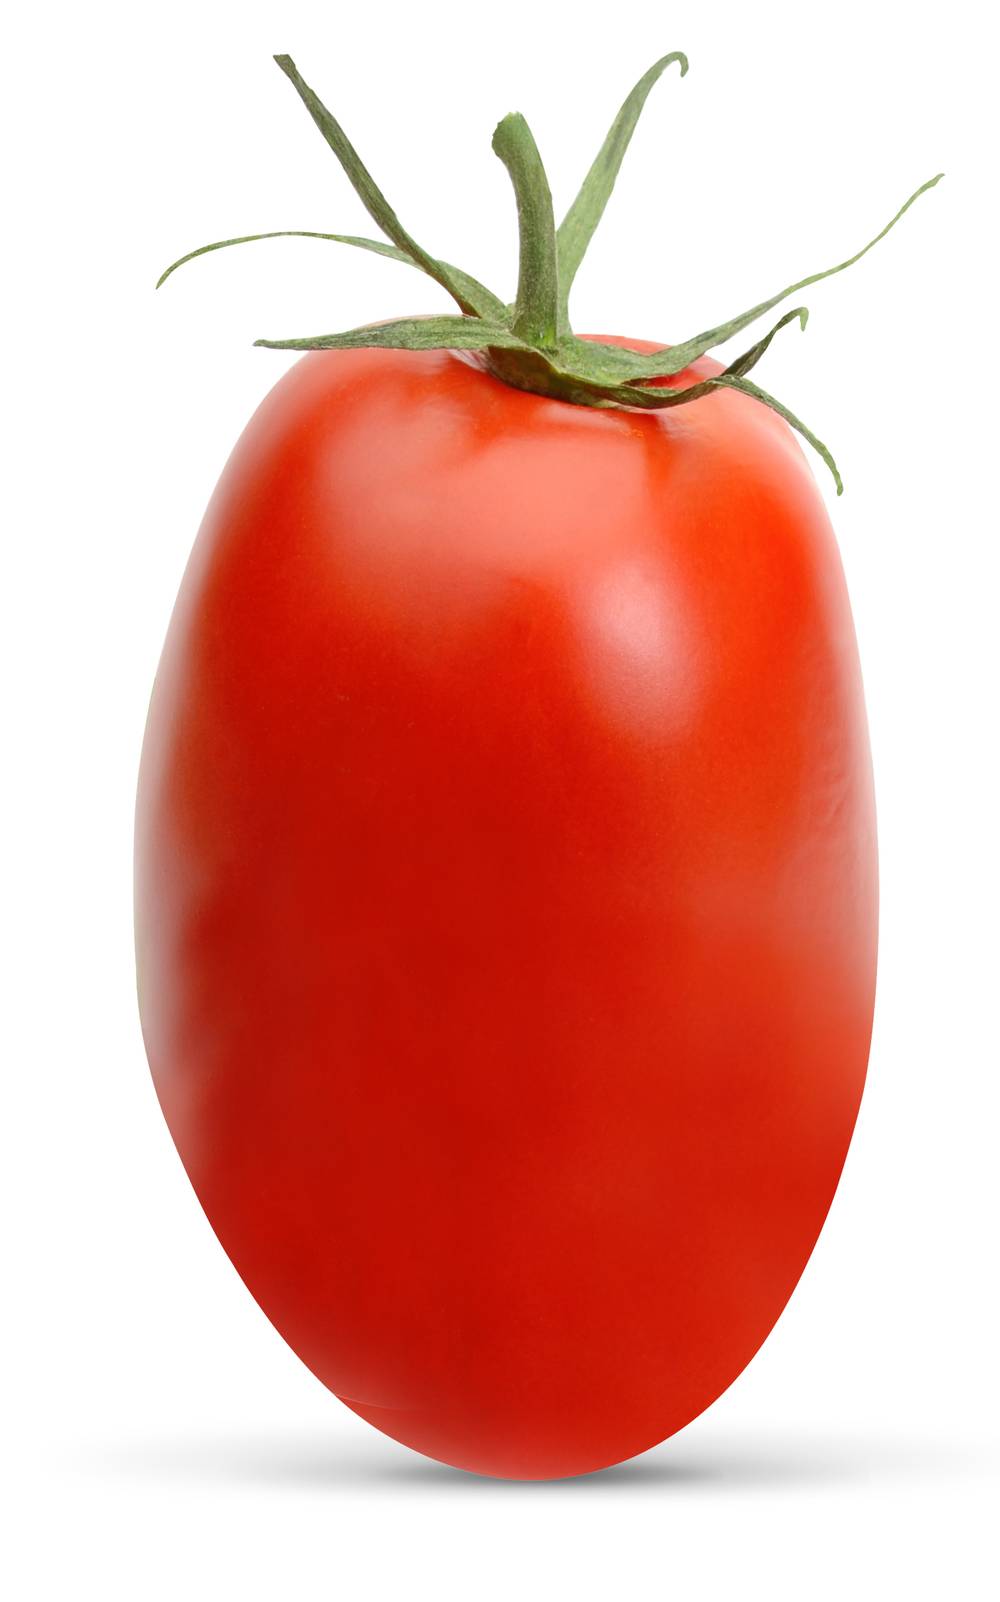 Italian Tomato (1 tomato)